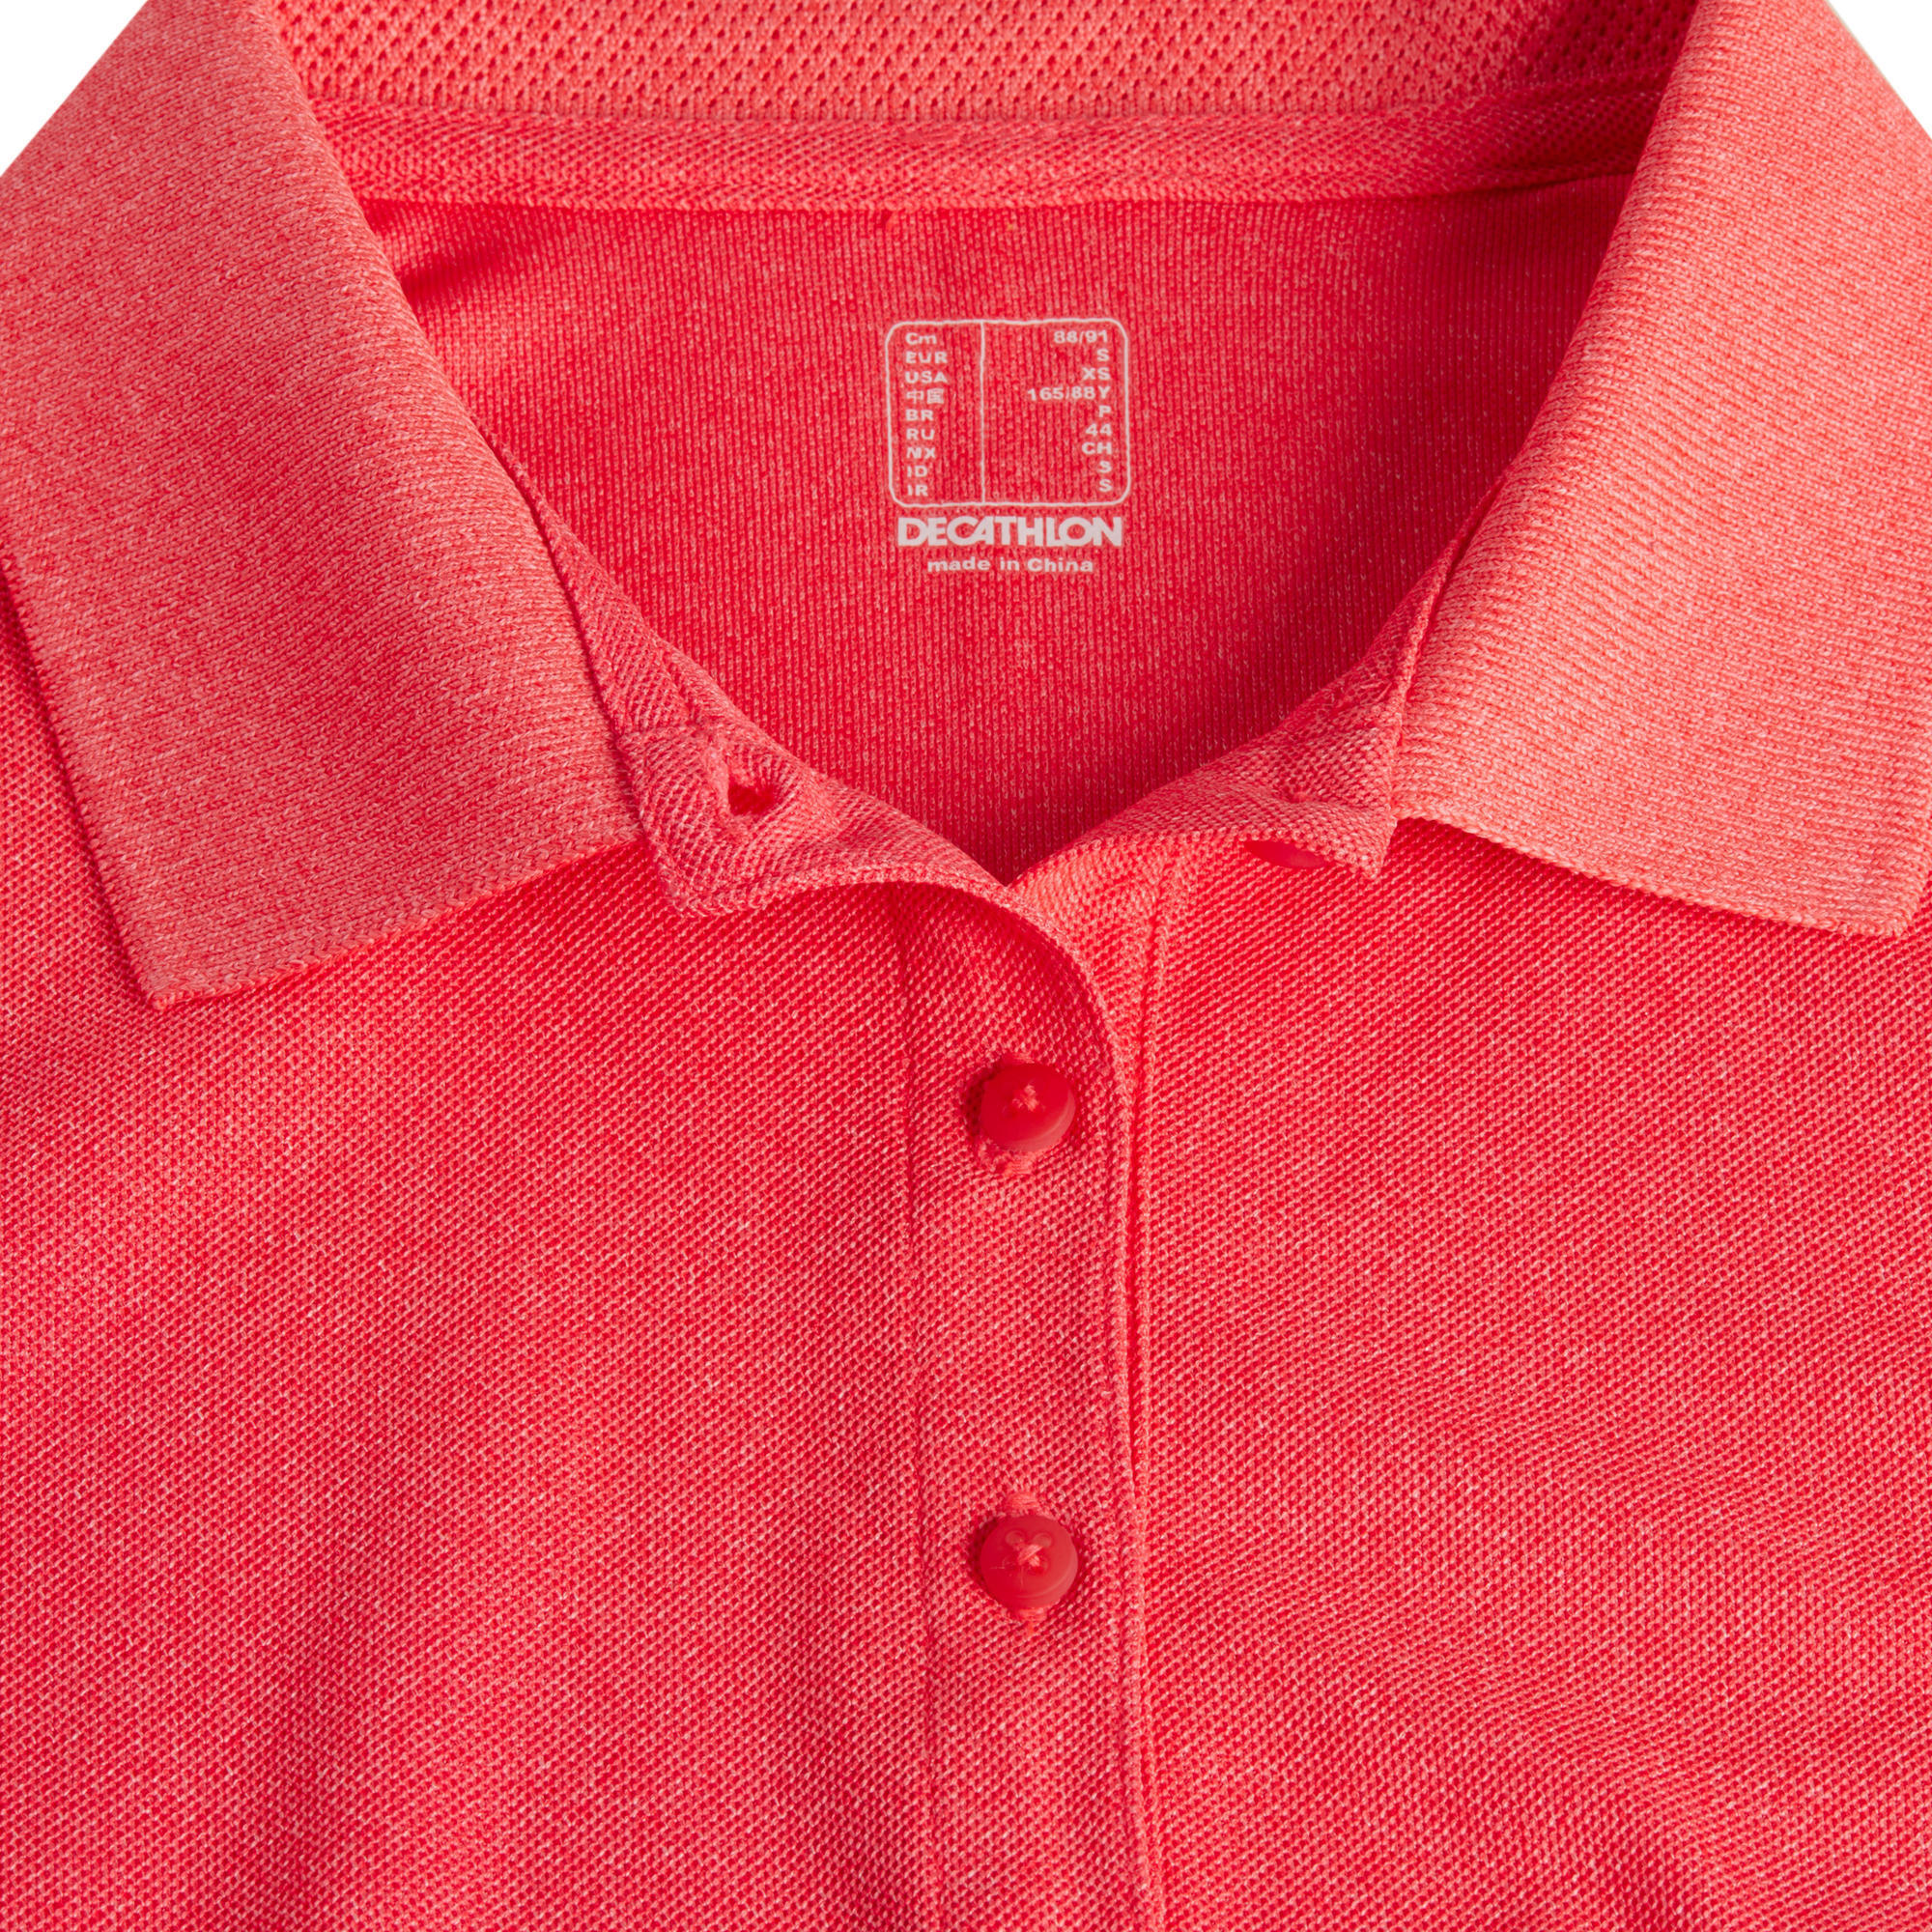 red golf shirt womens